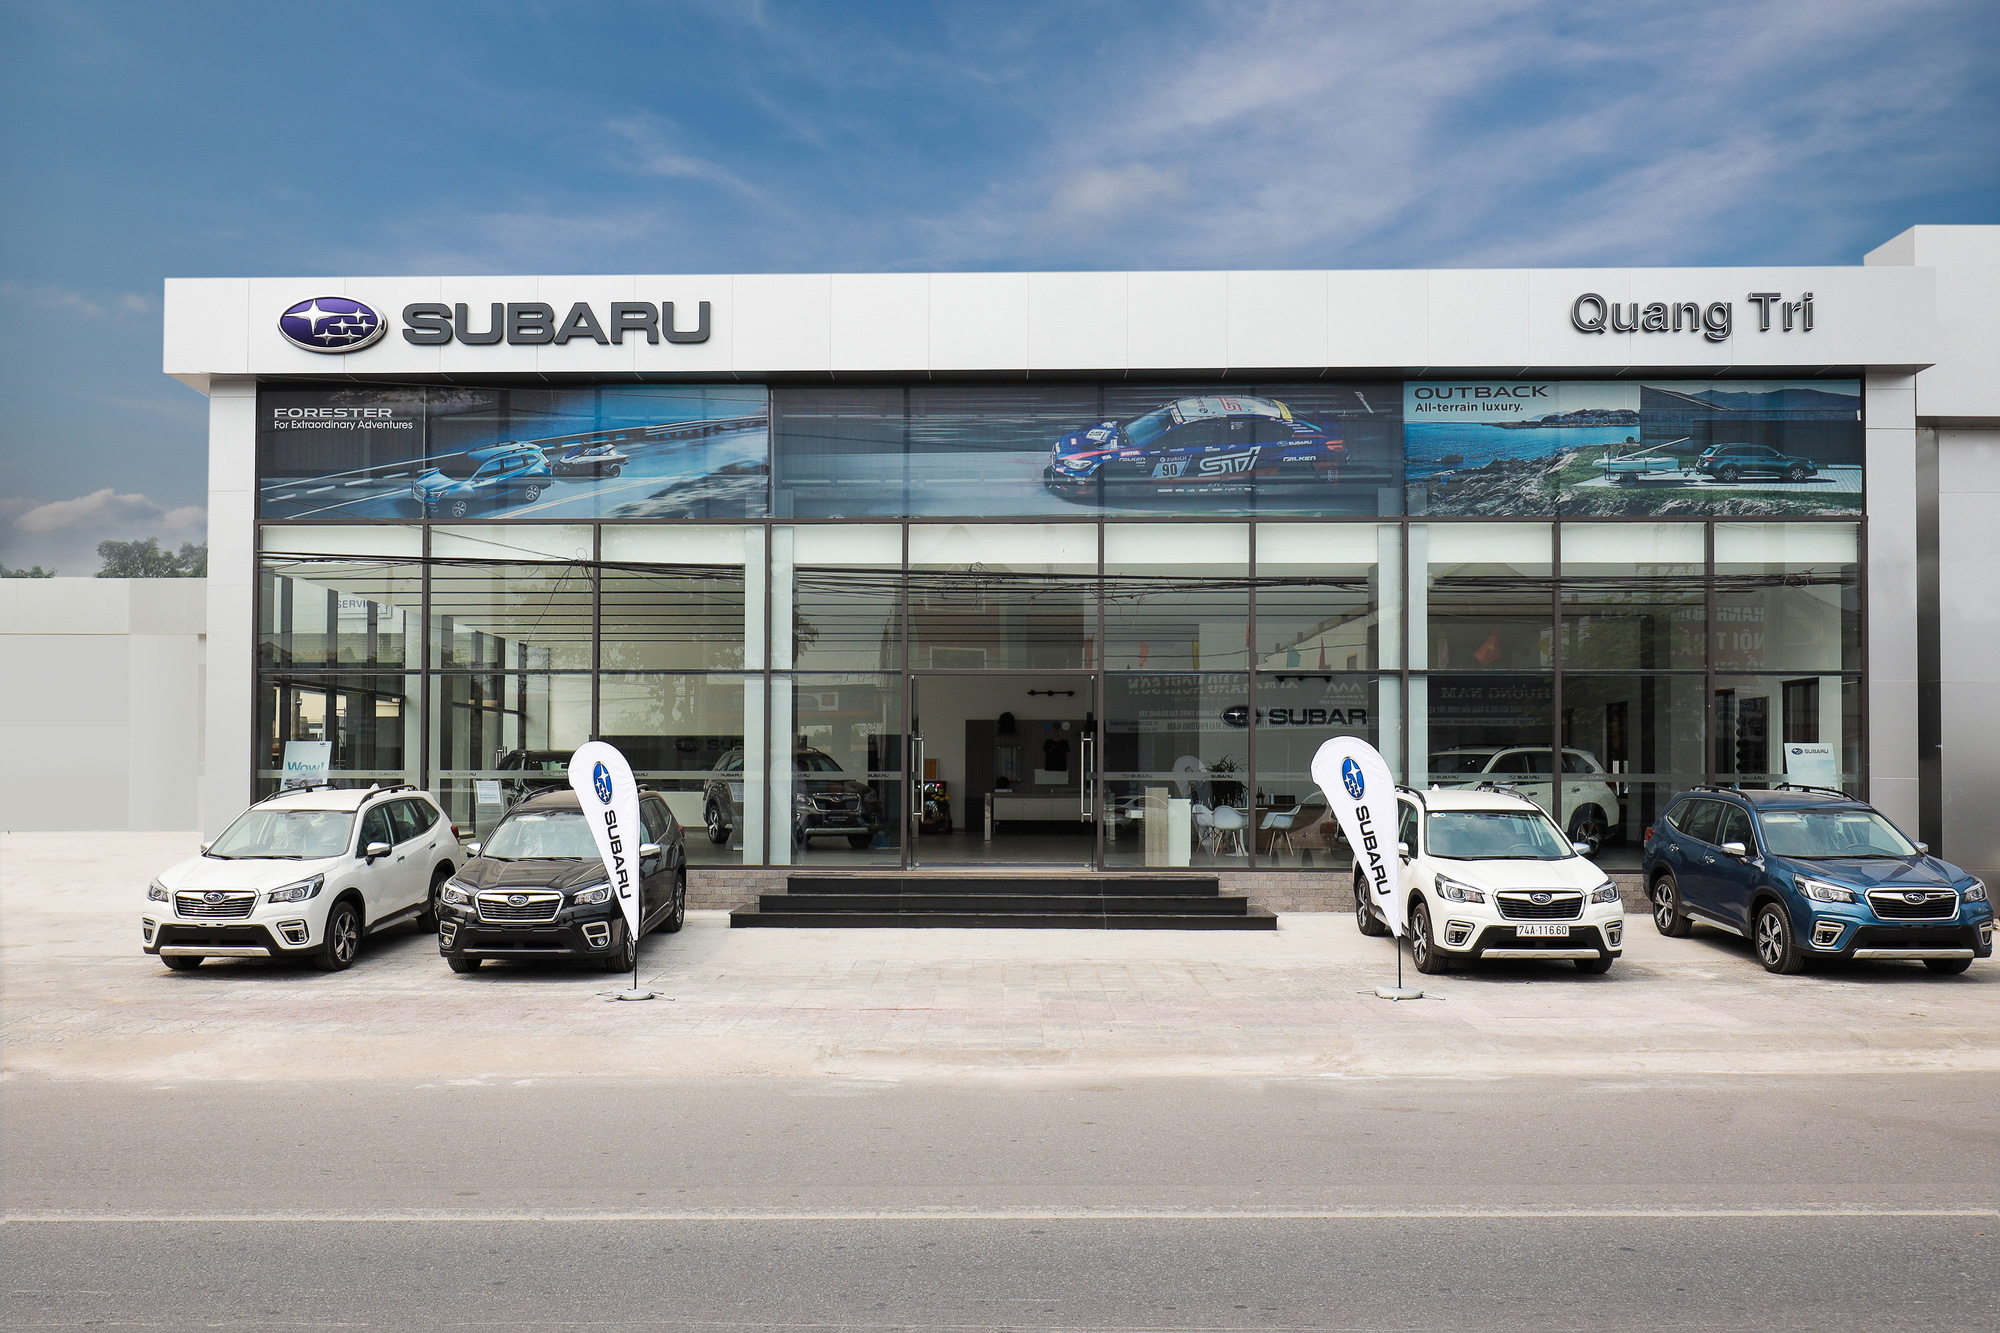 Bất chấp dịch Covid-19, Subaru vẫn mở thêm showroom tại Việt Nam - Ảnh 1.